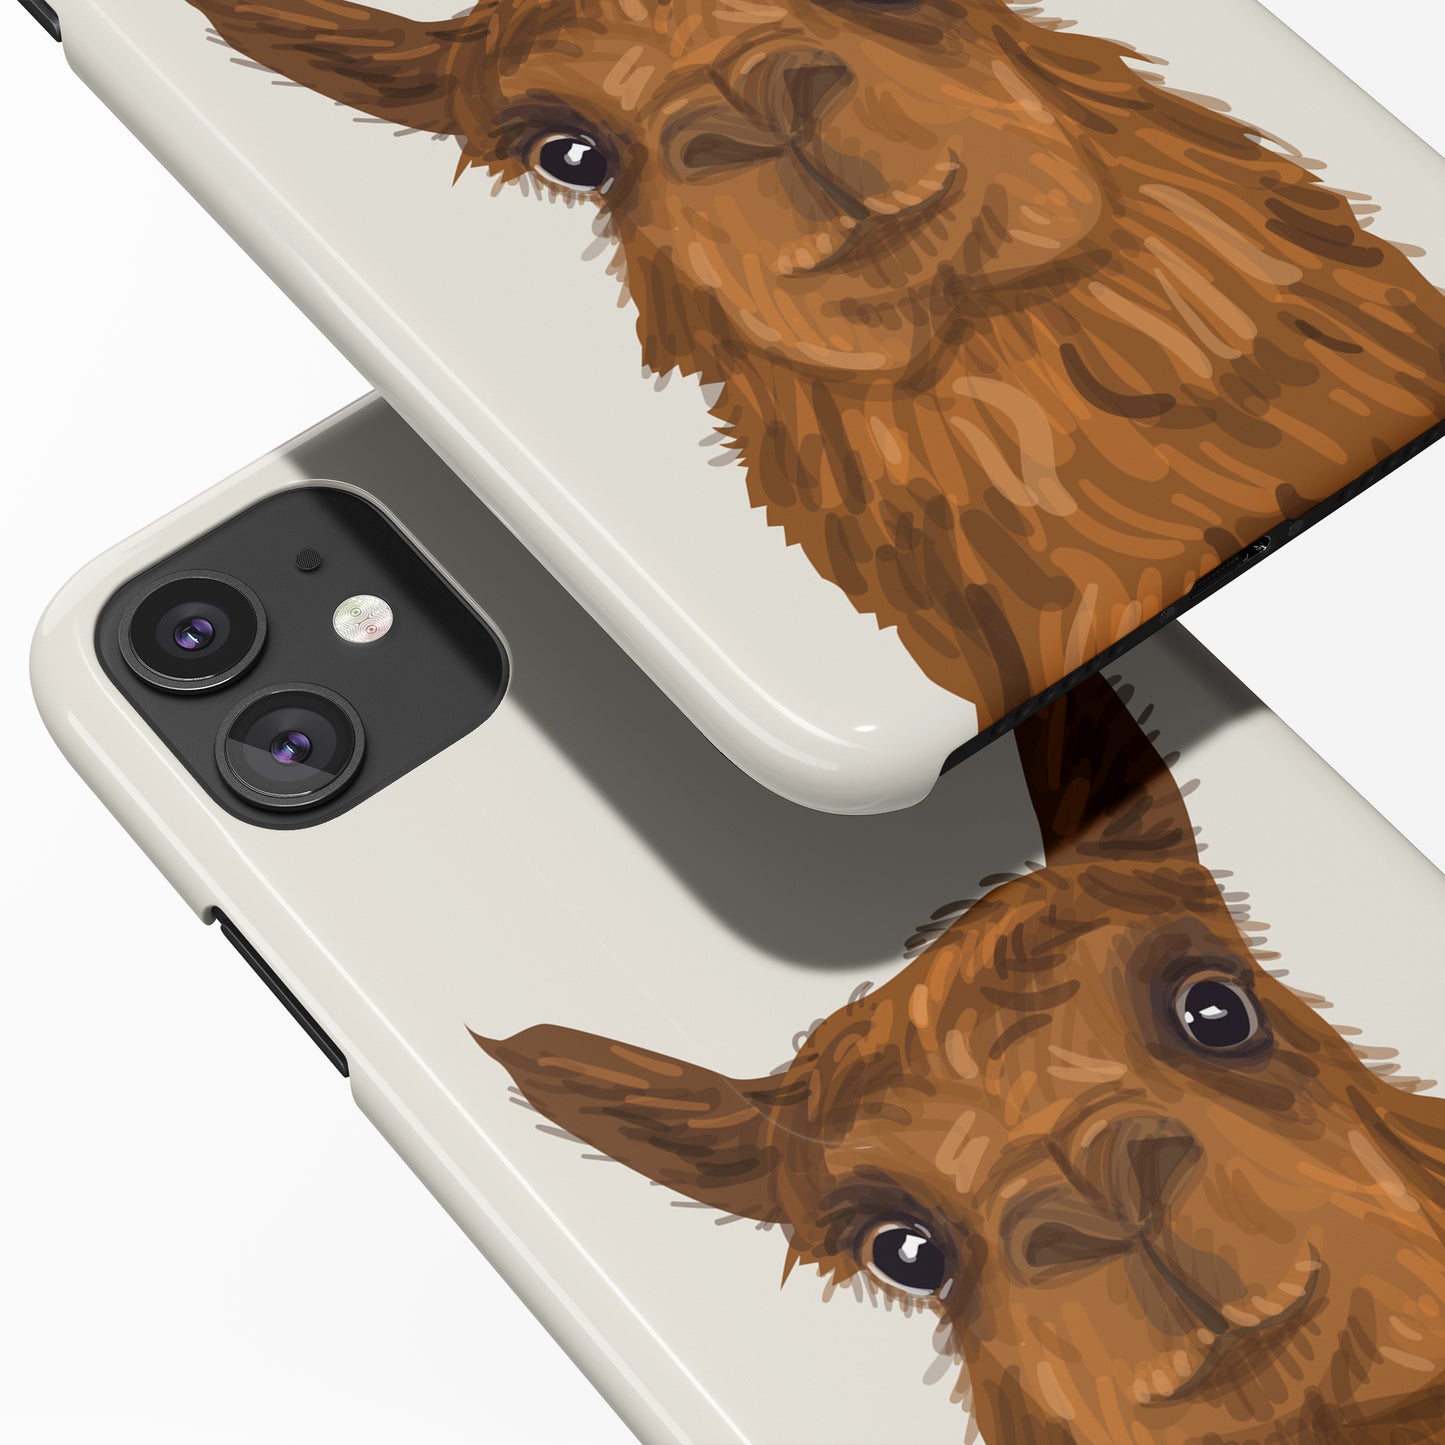 Cute Alpaca iPhone Case